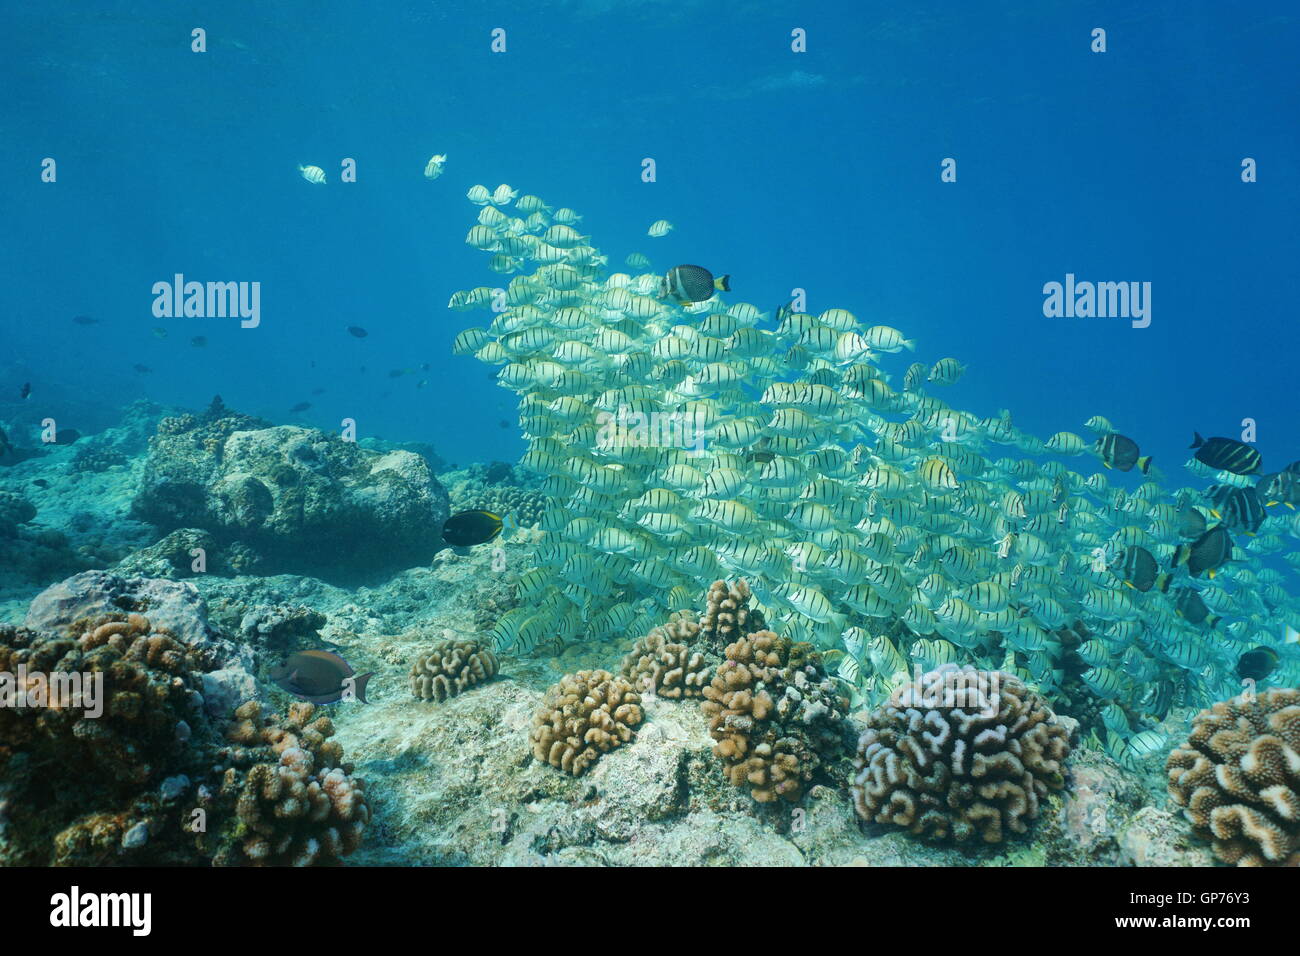 Pesce tropicale scuola codolo trusty underwater in corrispondenza di un bordo di una scogliera di corallo barriera, Rangiroa, oceano pacifico, Polinesia Francese Foto Stock